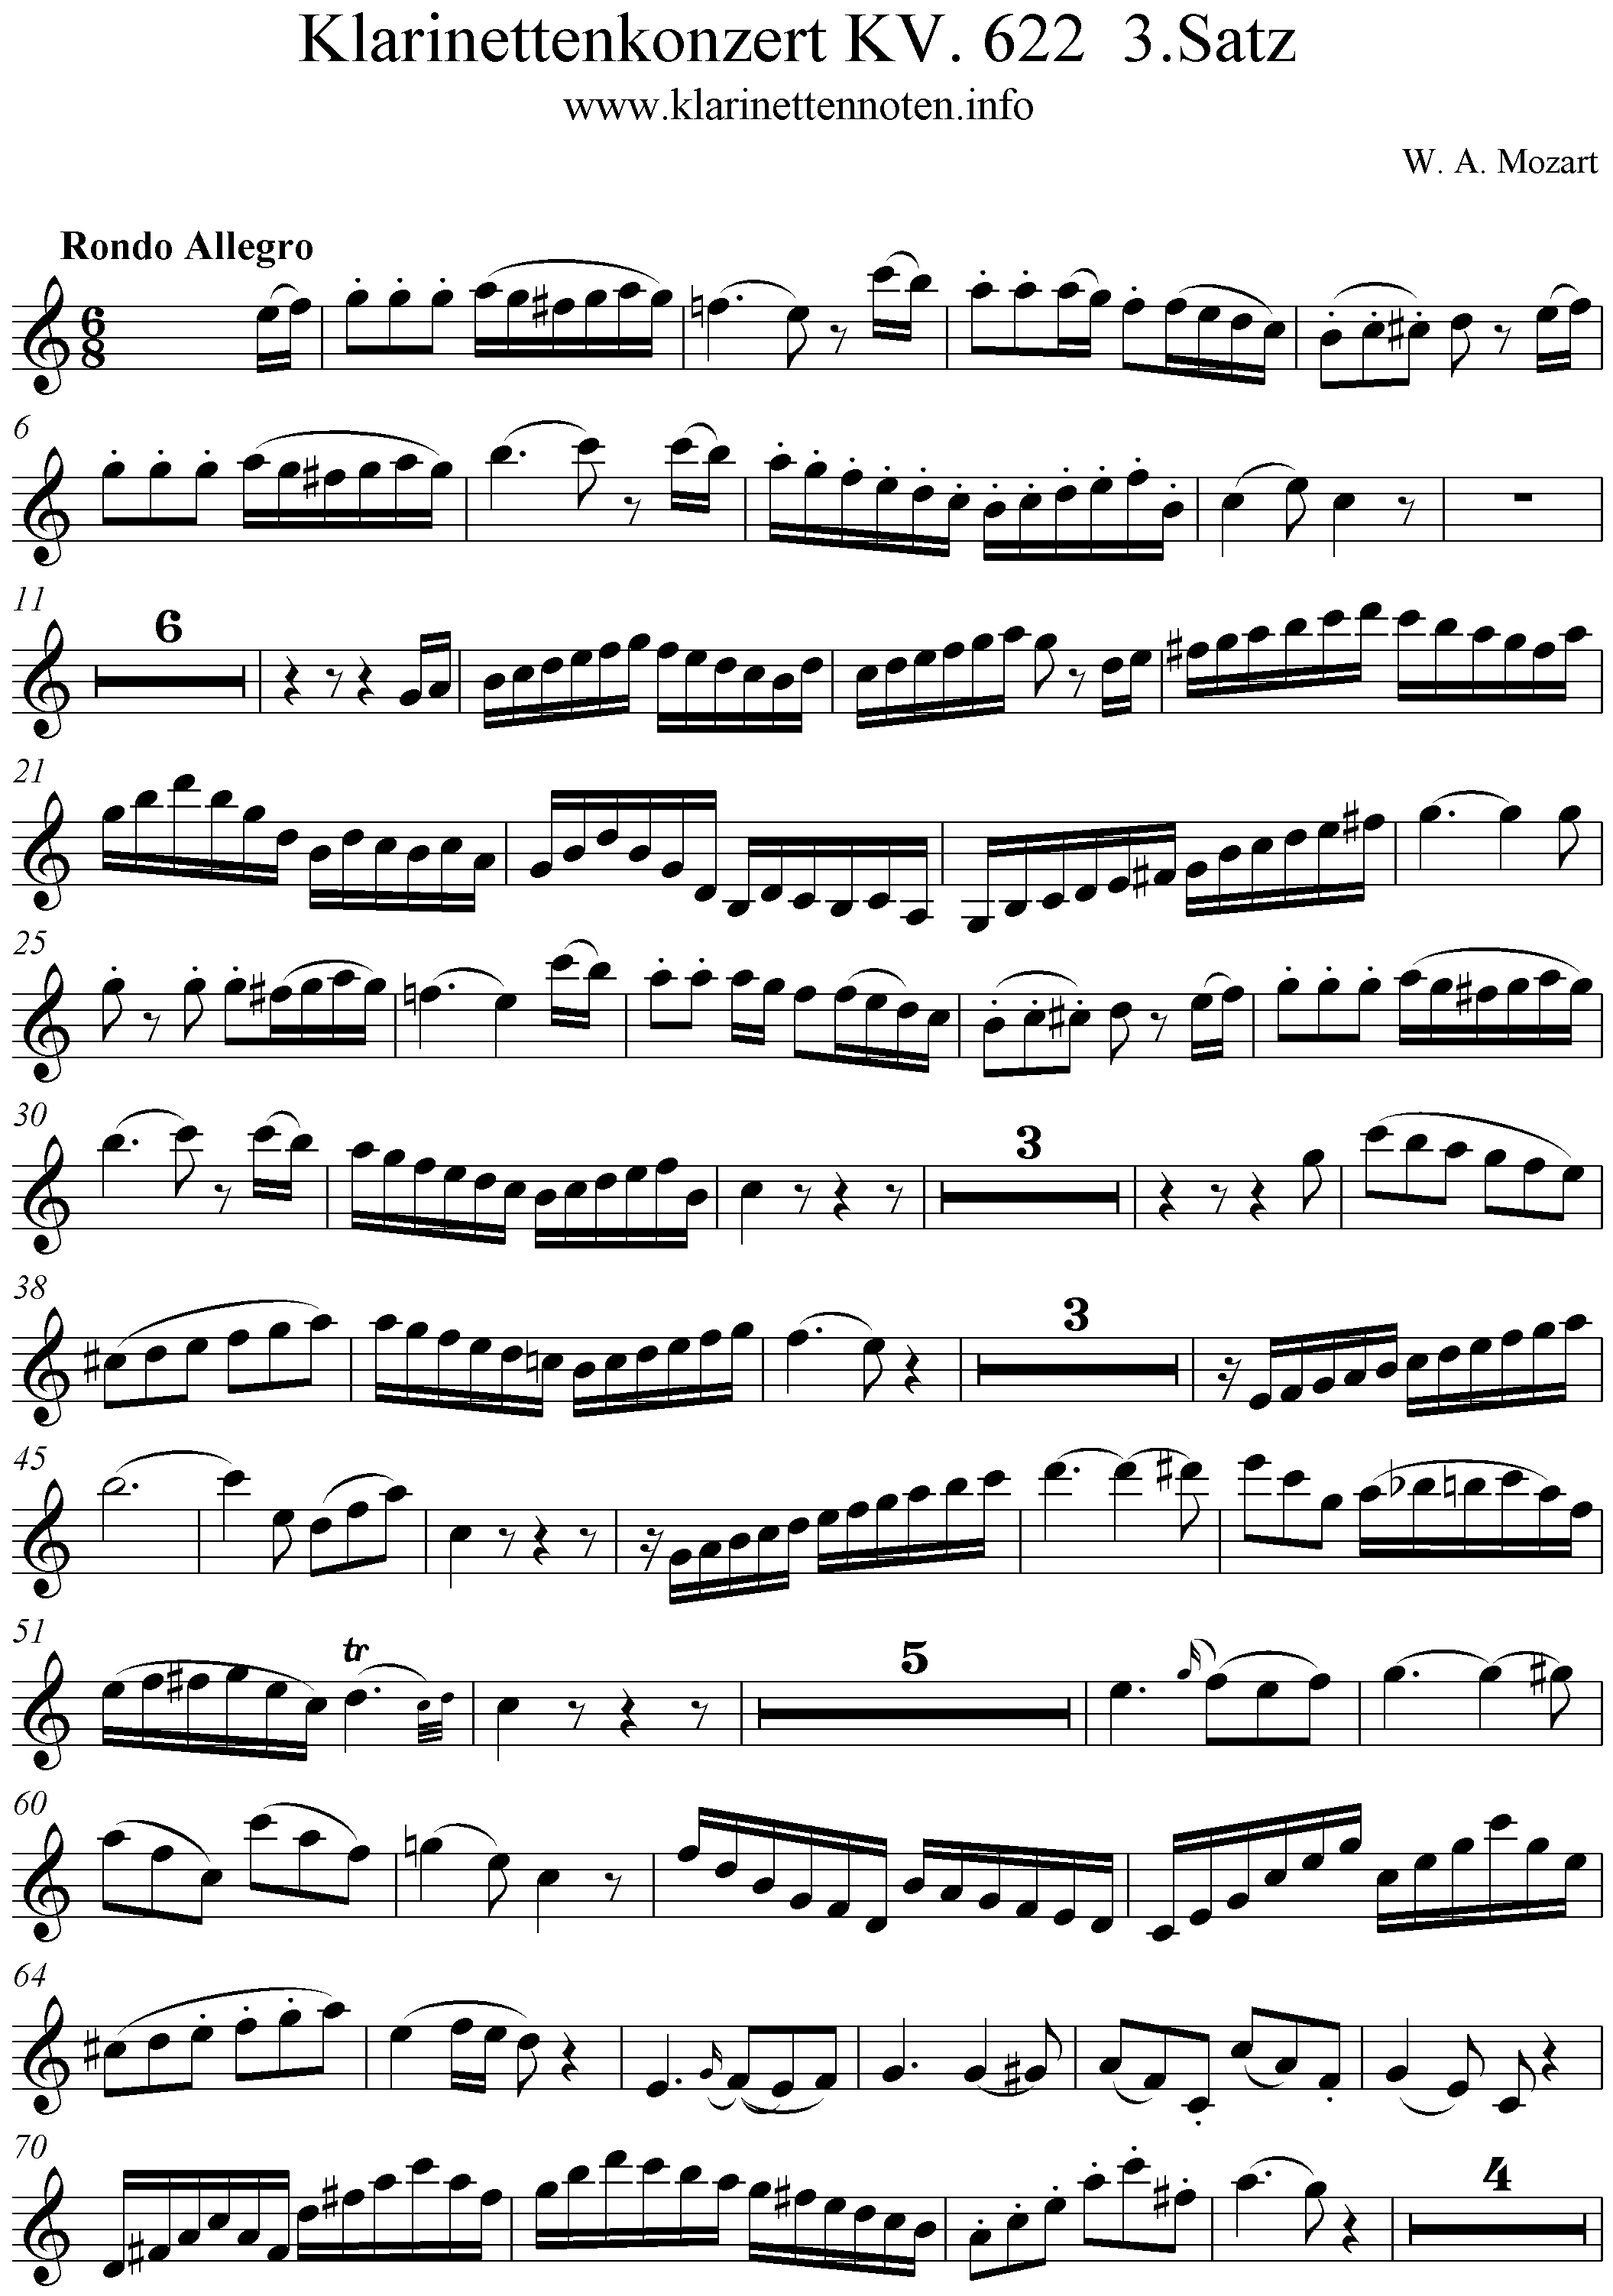 Mozart Klarinettenkonzert Klarinettenstimme 3. Satz Rondo